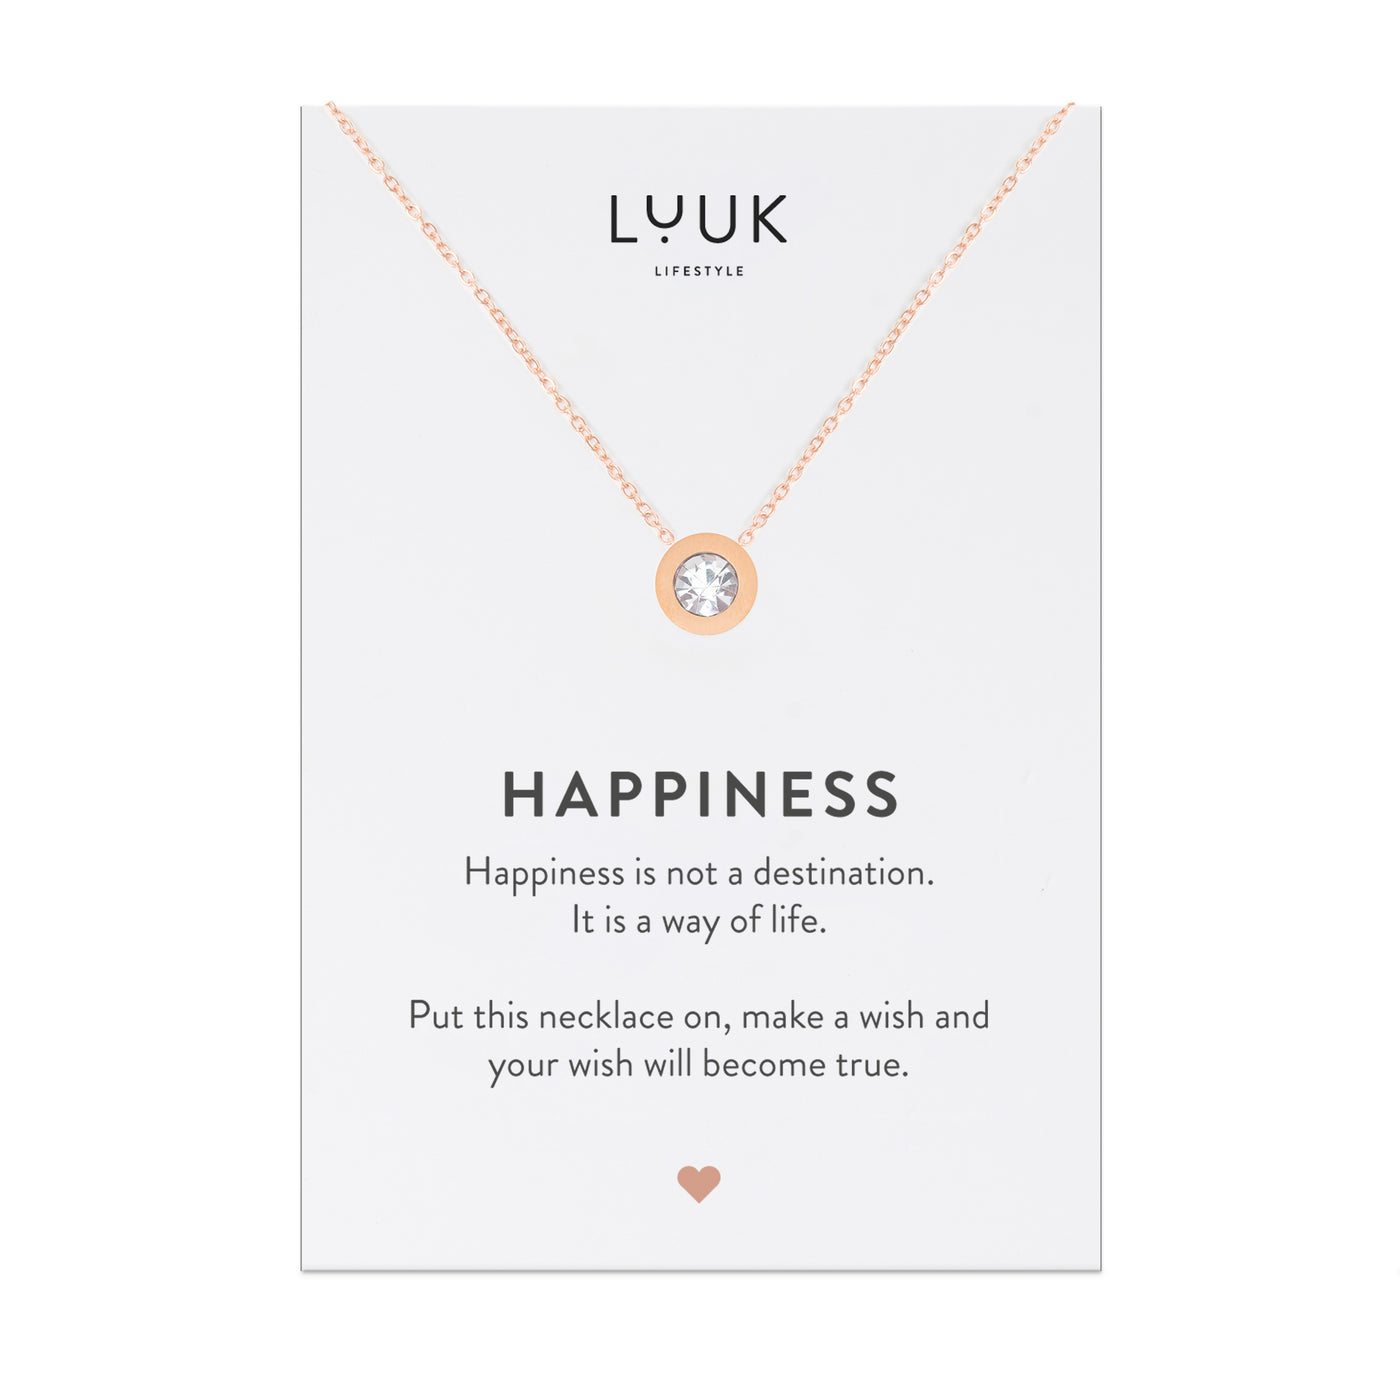 Rosegoldene Halskette mit Strassstein Anhänger auf Happiness Spruchkarte von der Marke Luuk Lifestyle 